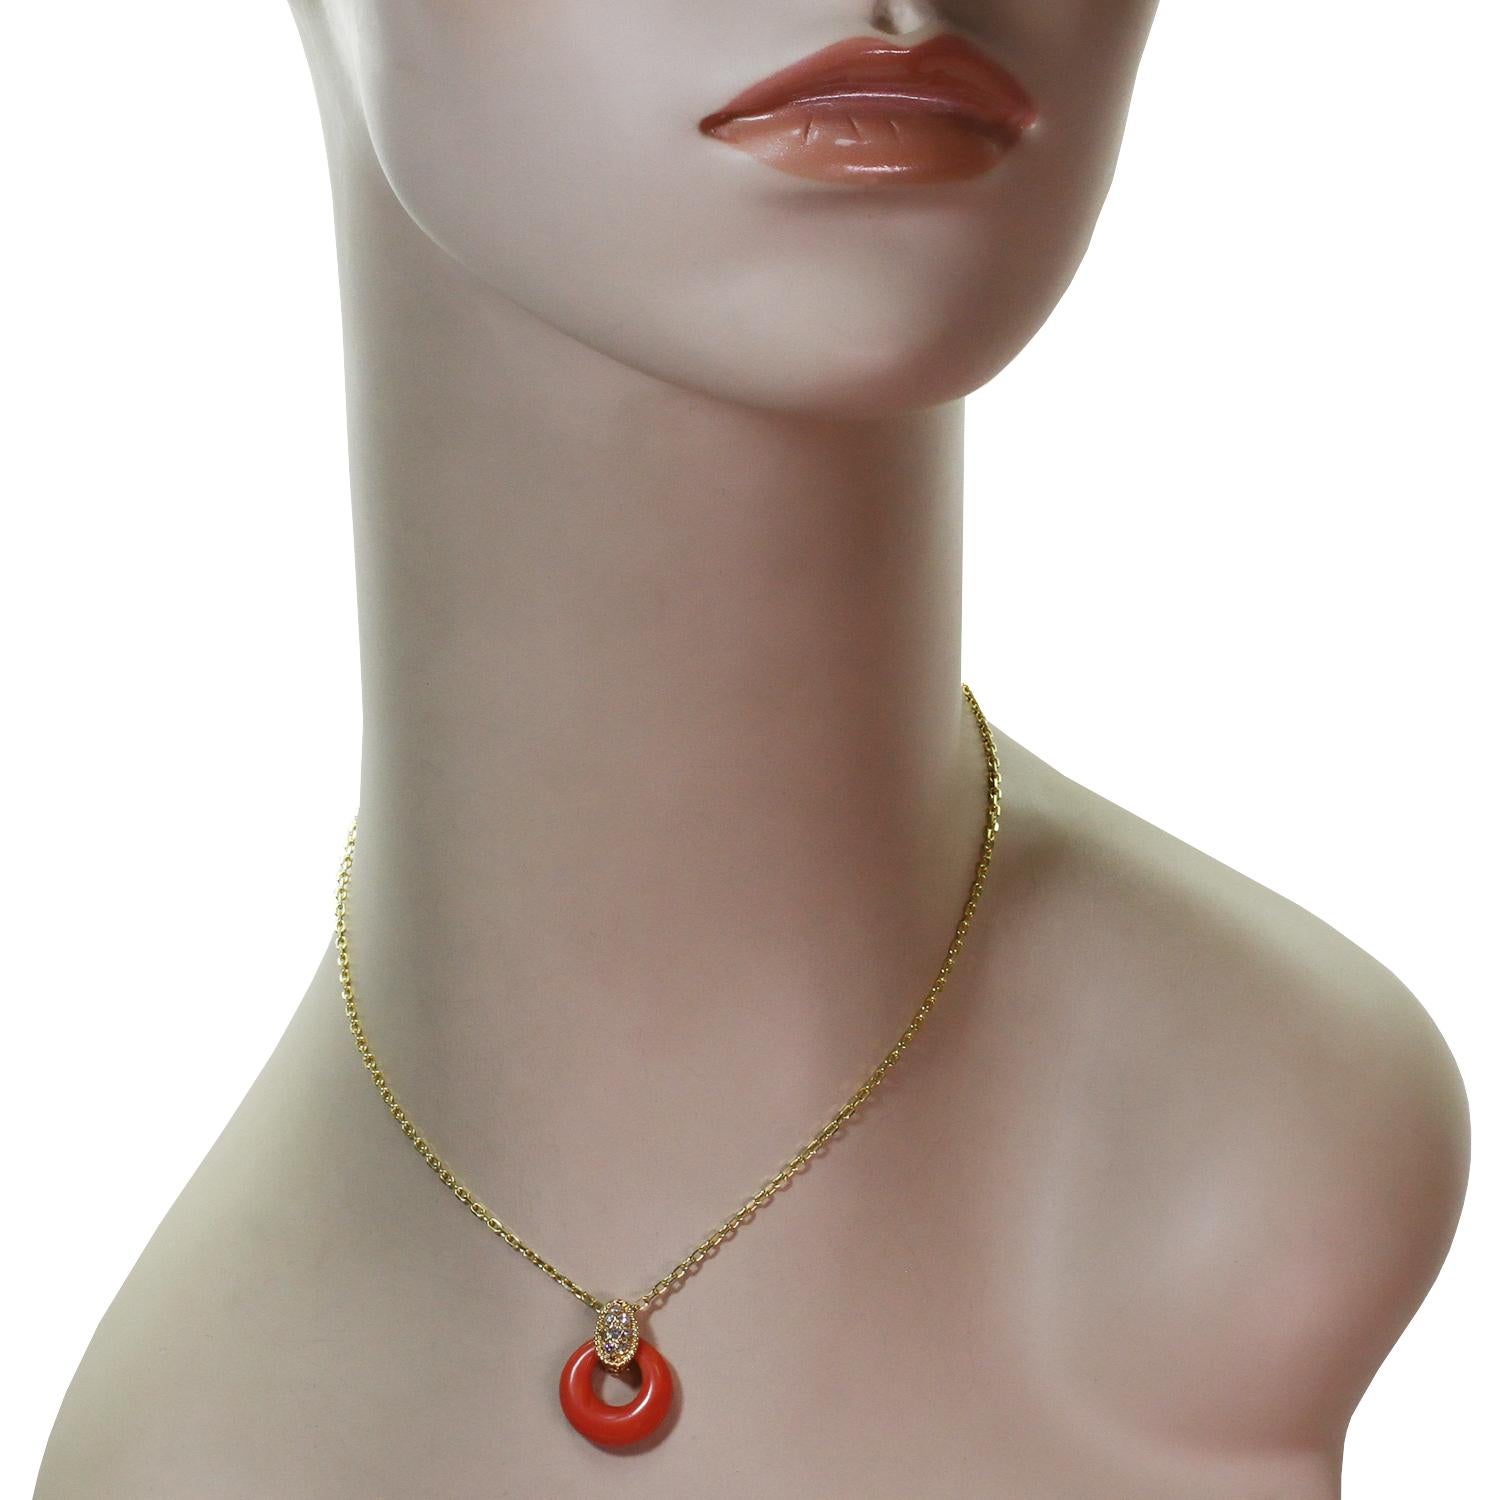 interchangeable pendant necklace vintage